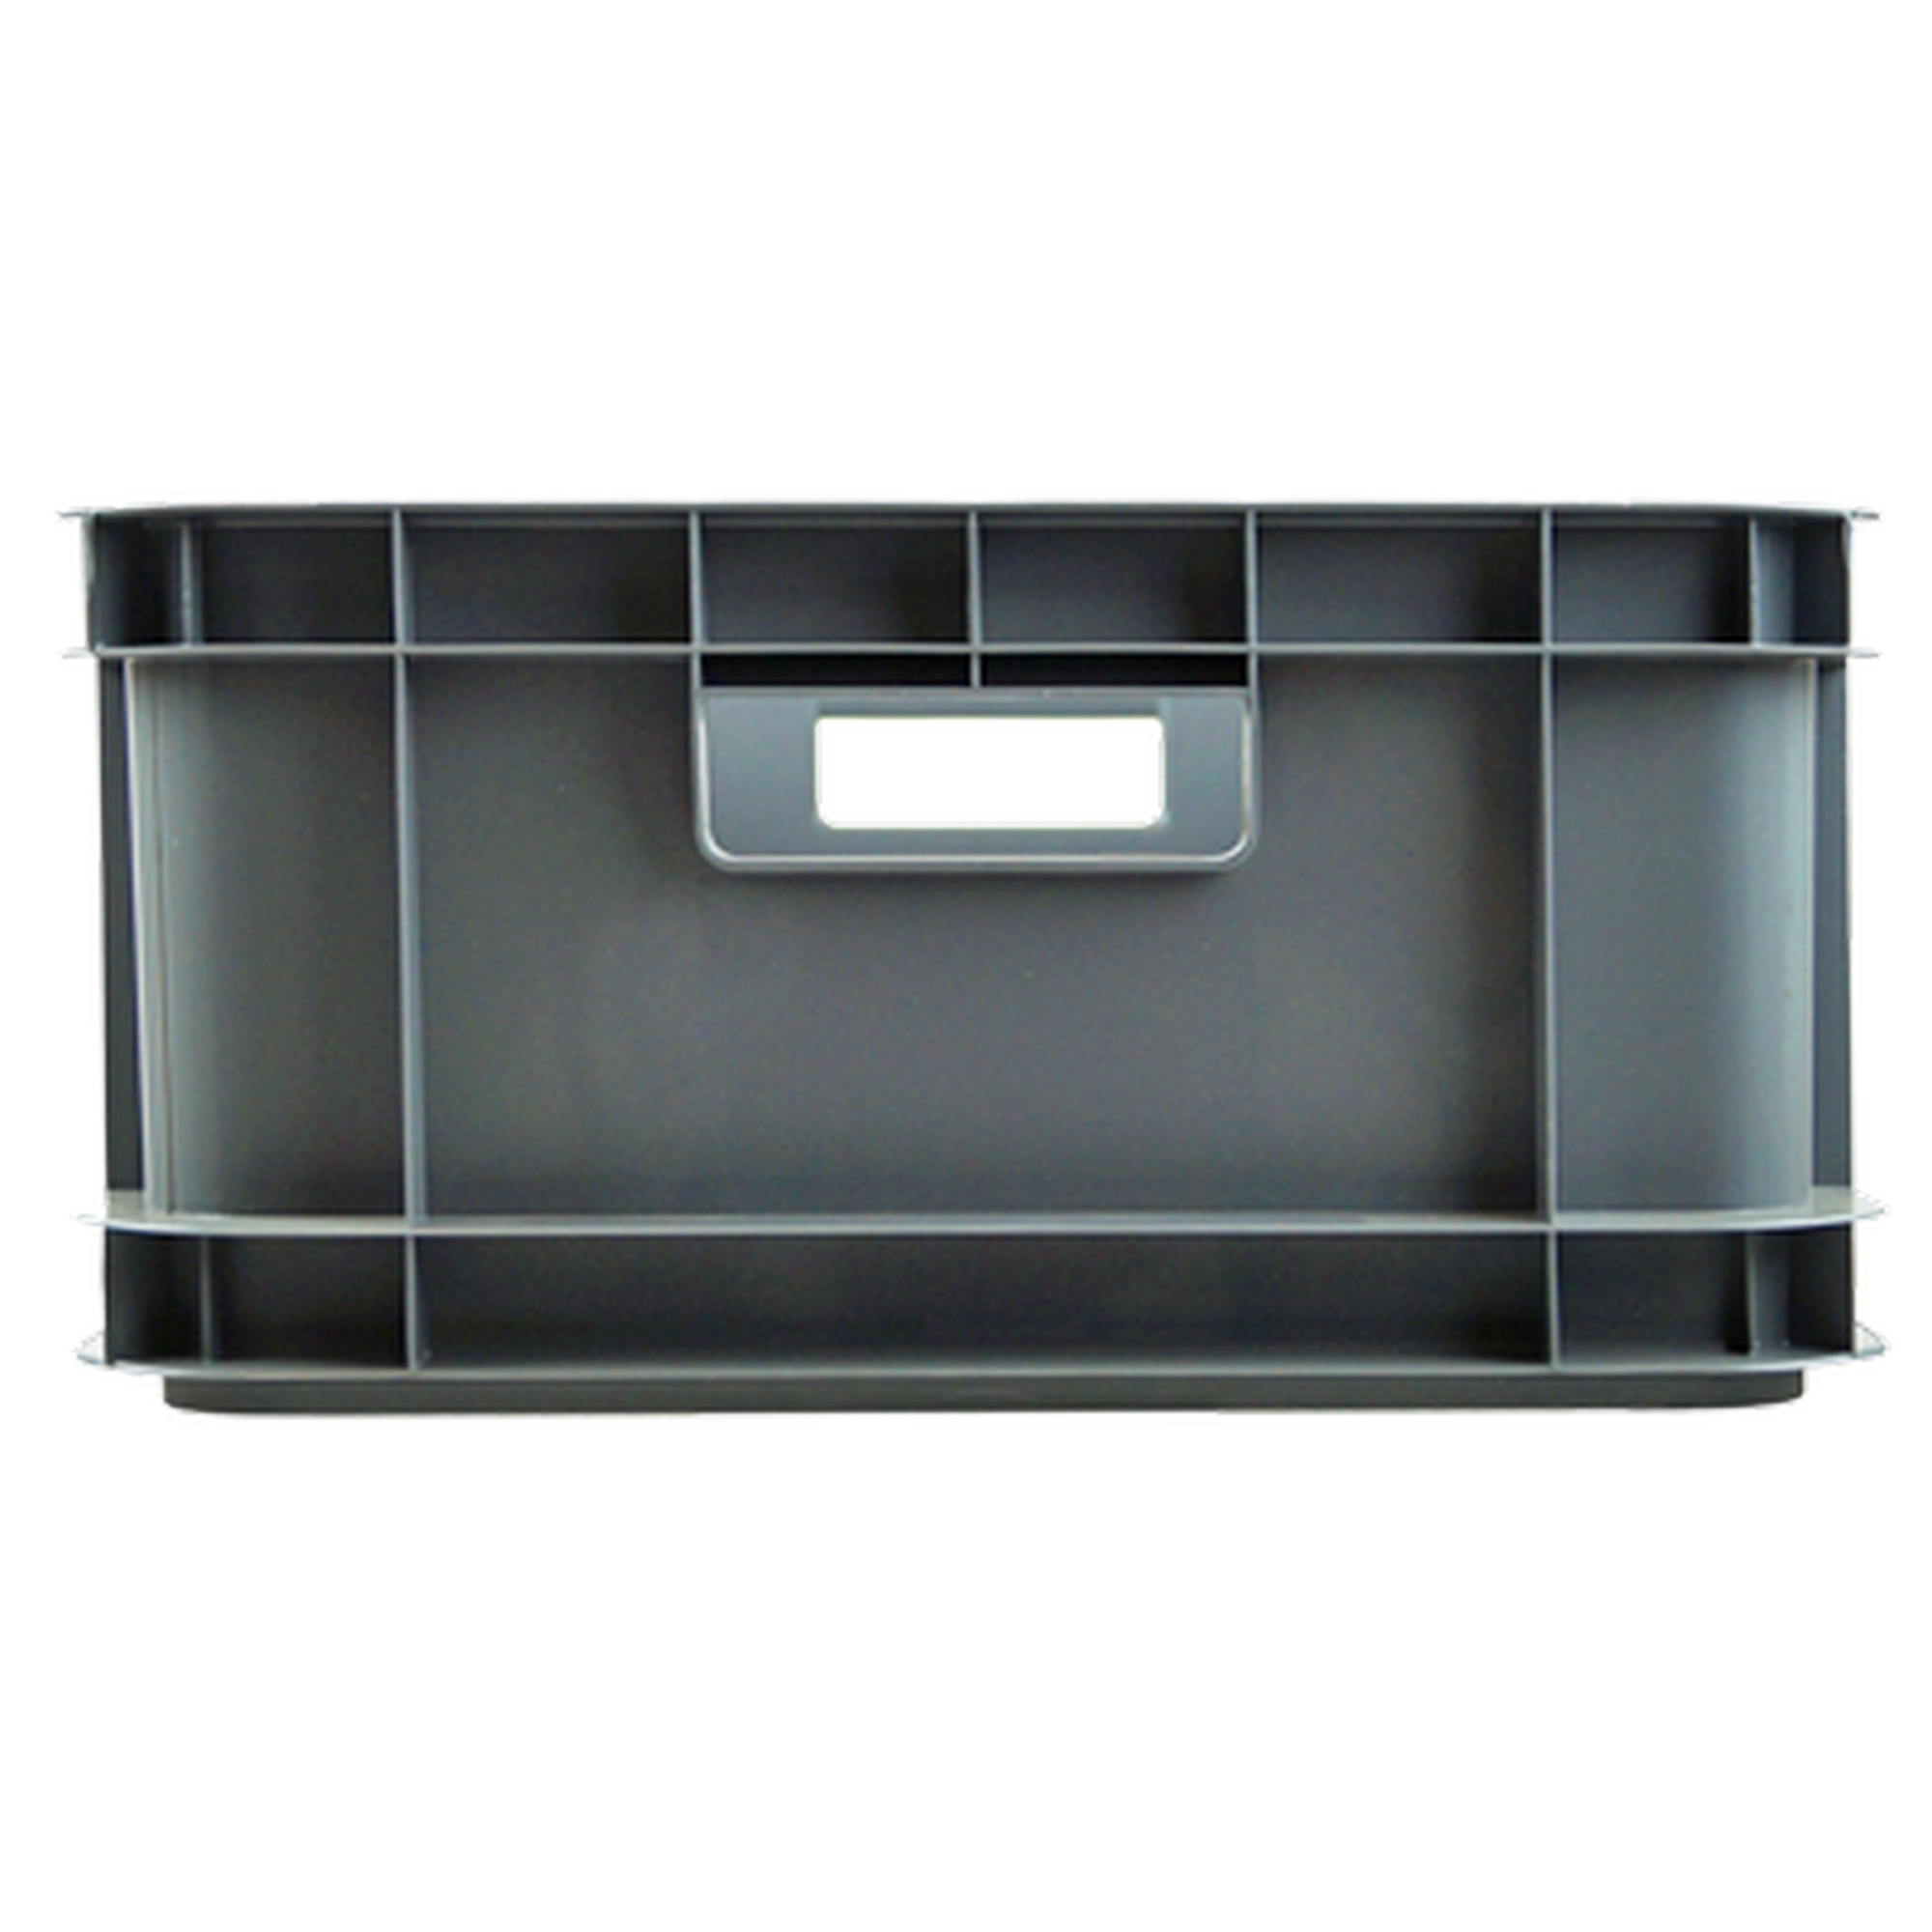 Aufbewahrungsbox 'Multi-Box' grau 50,2 x 35 x 17,5 cm, 30 l + product picture